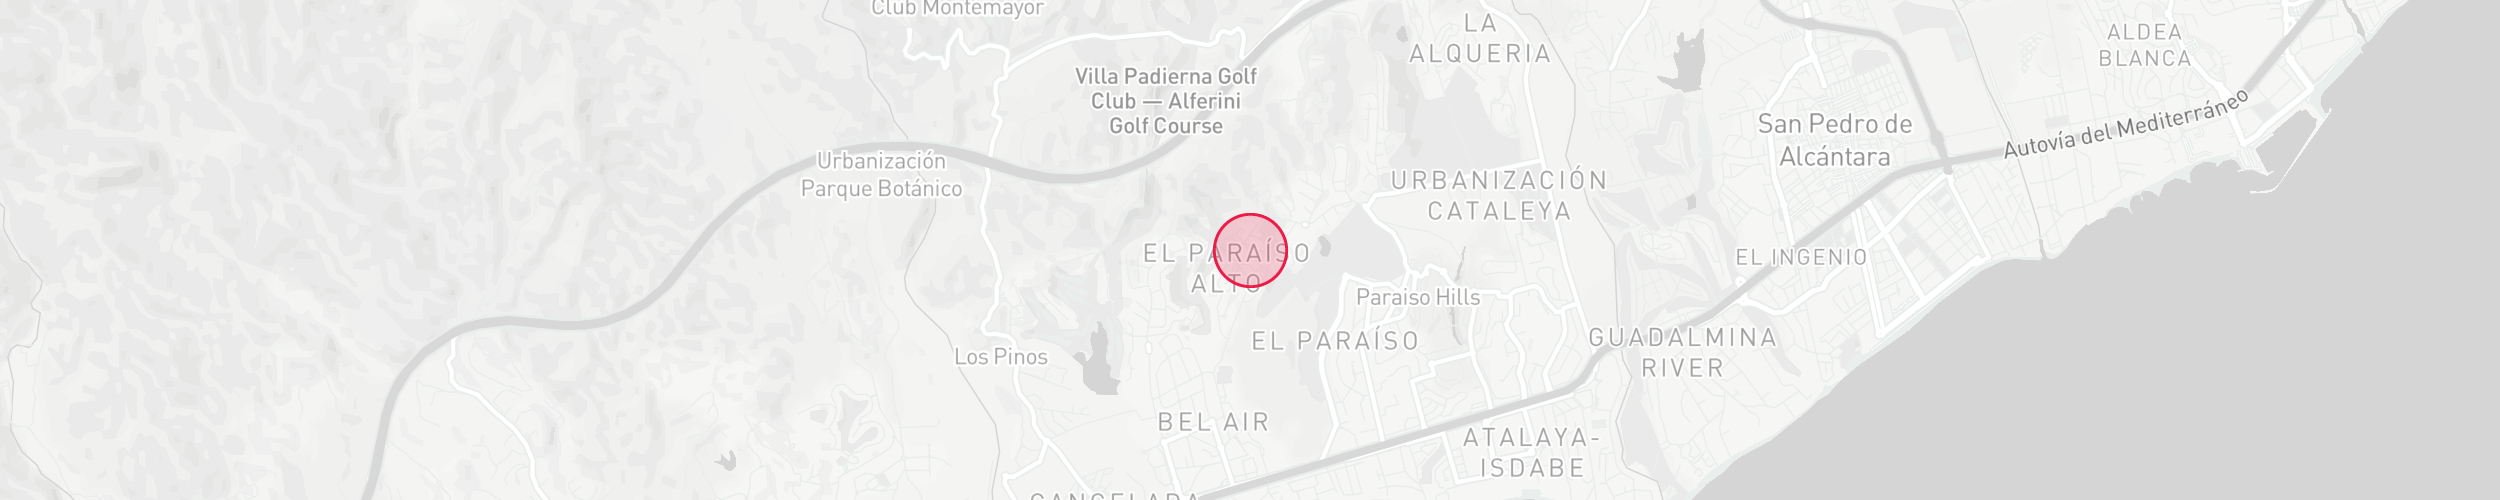 Mapa de localización de la propiedad - Paraiso Alto